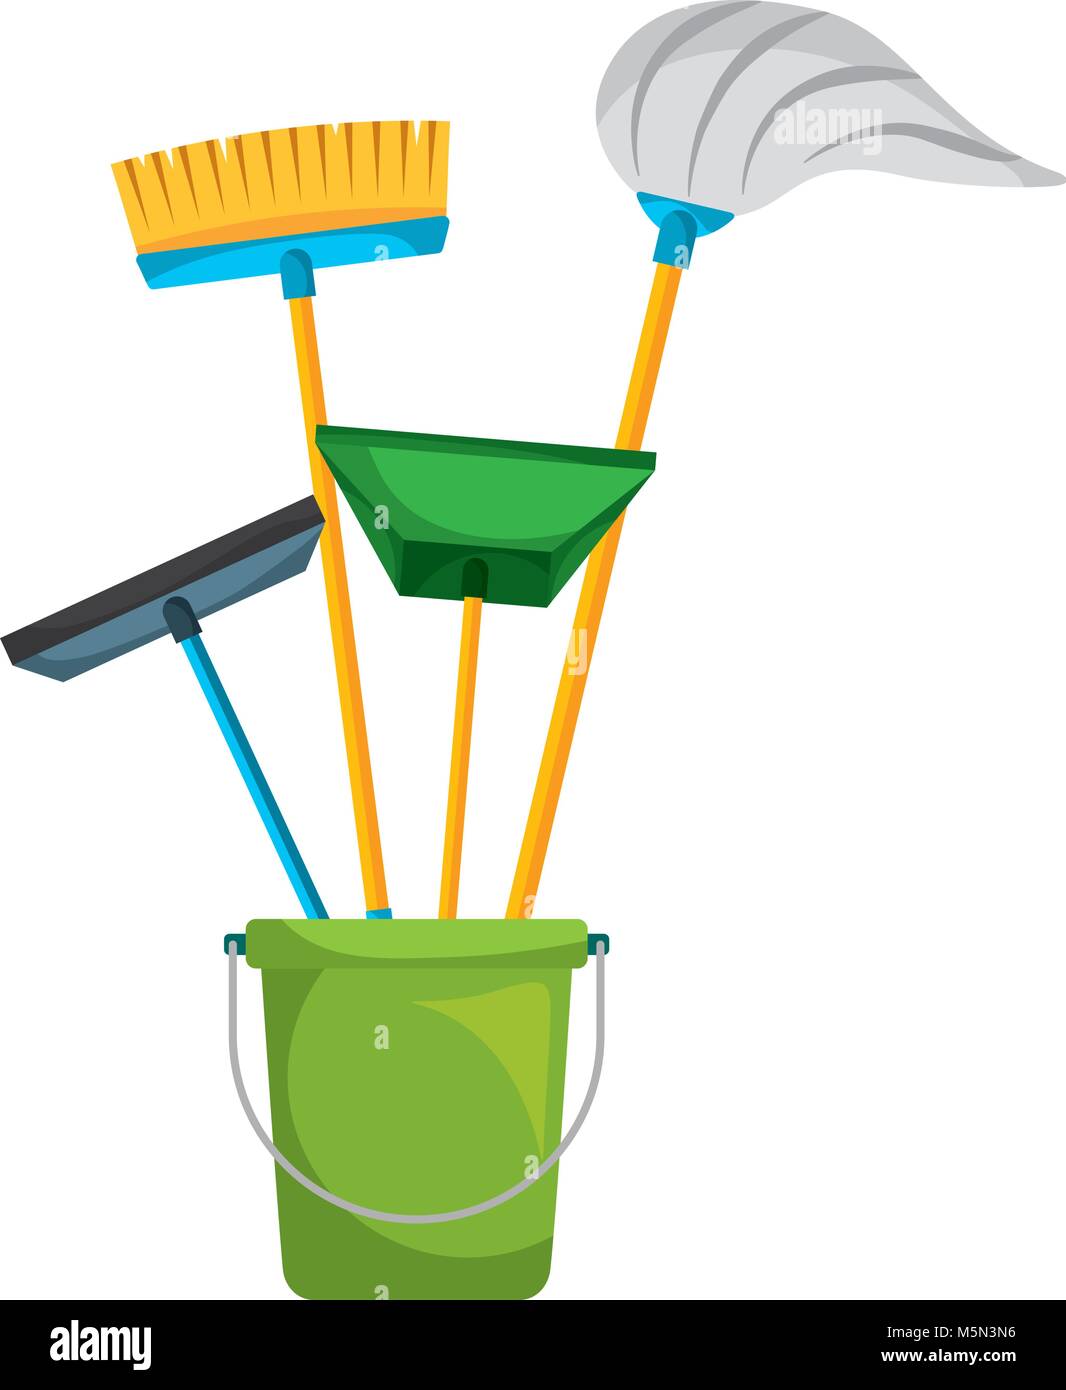 Limpieza de objetos balde de plástico lleno de portero útiles de limpieza  Imagen Vector de stock - Alamy